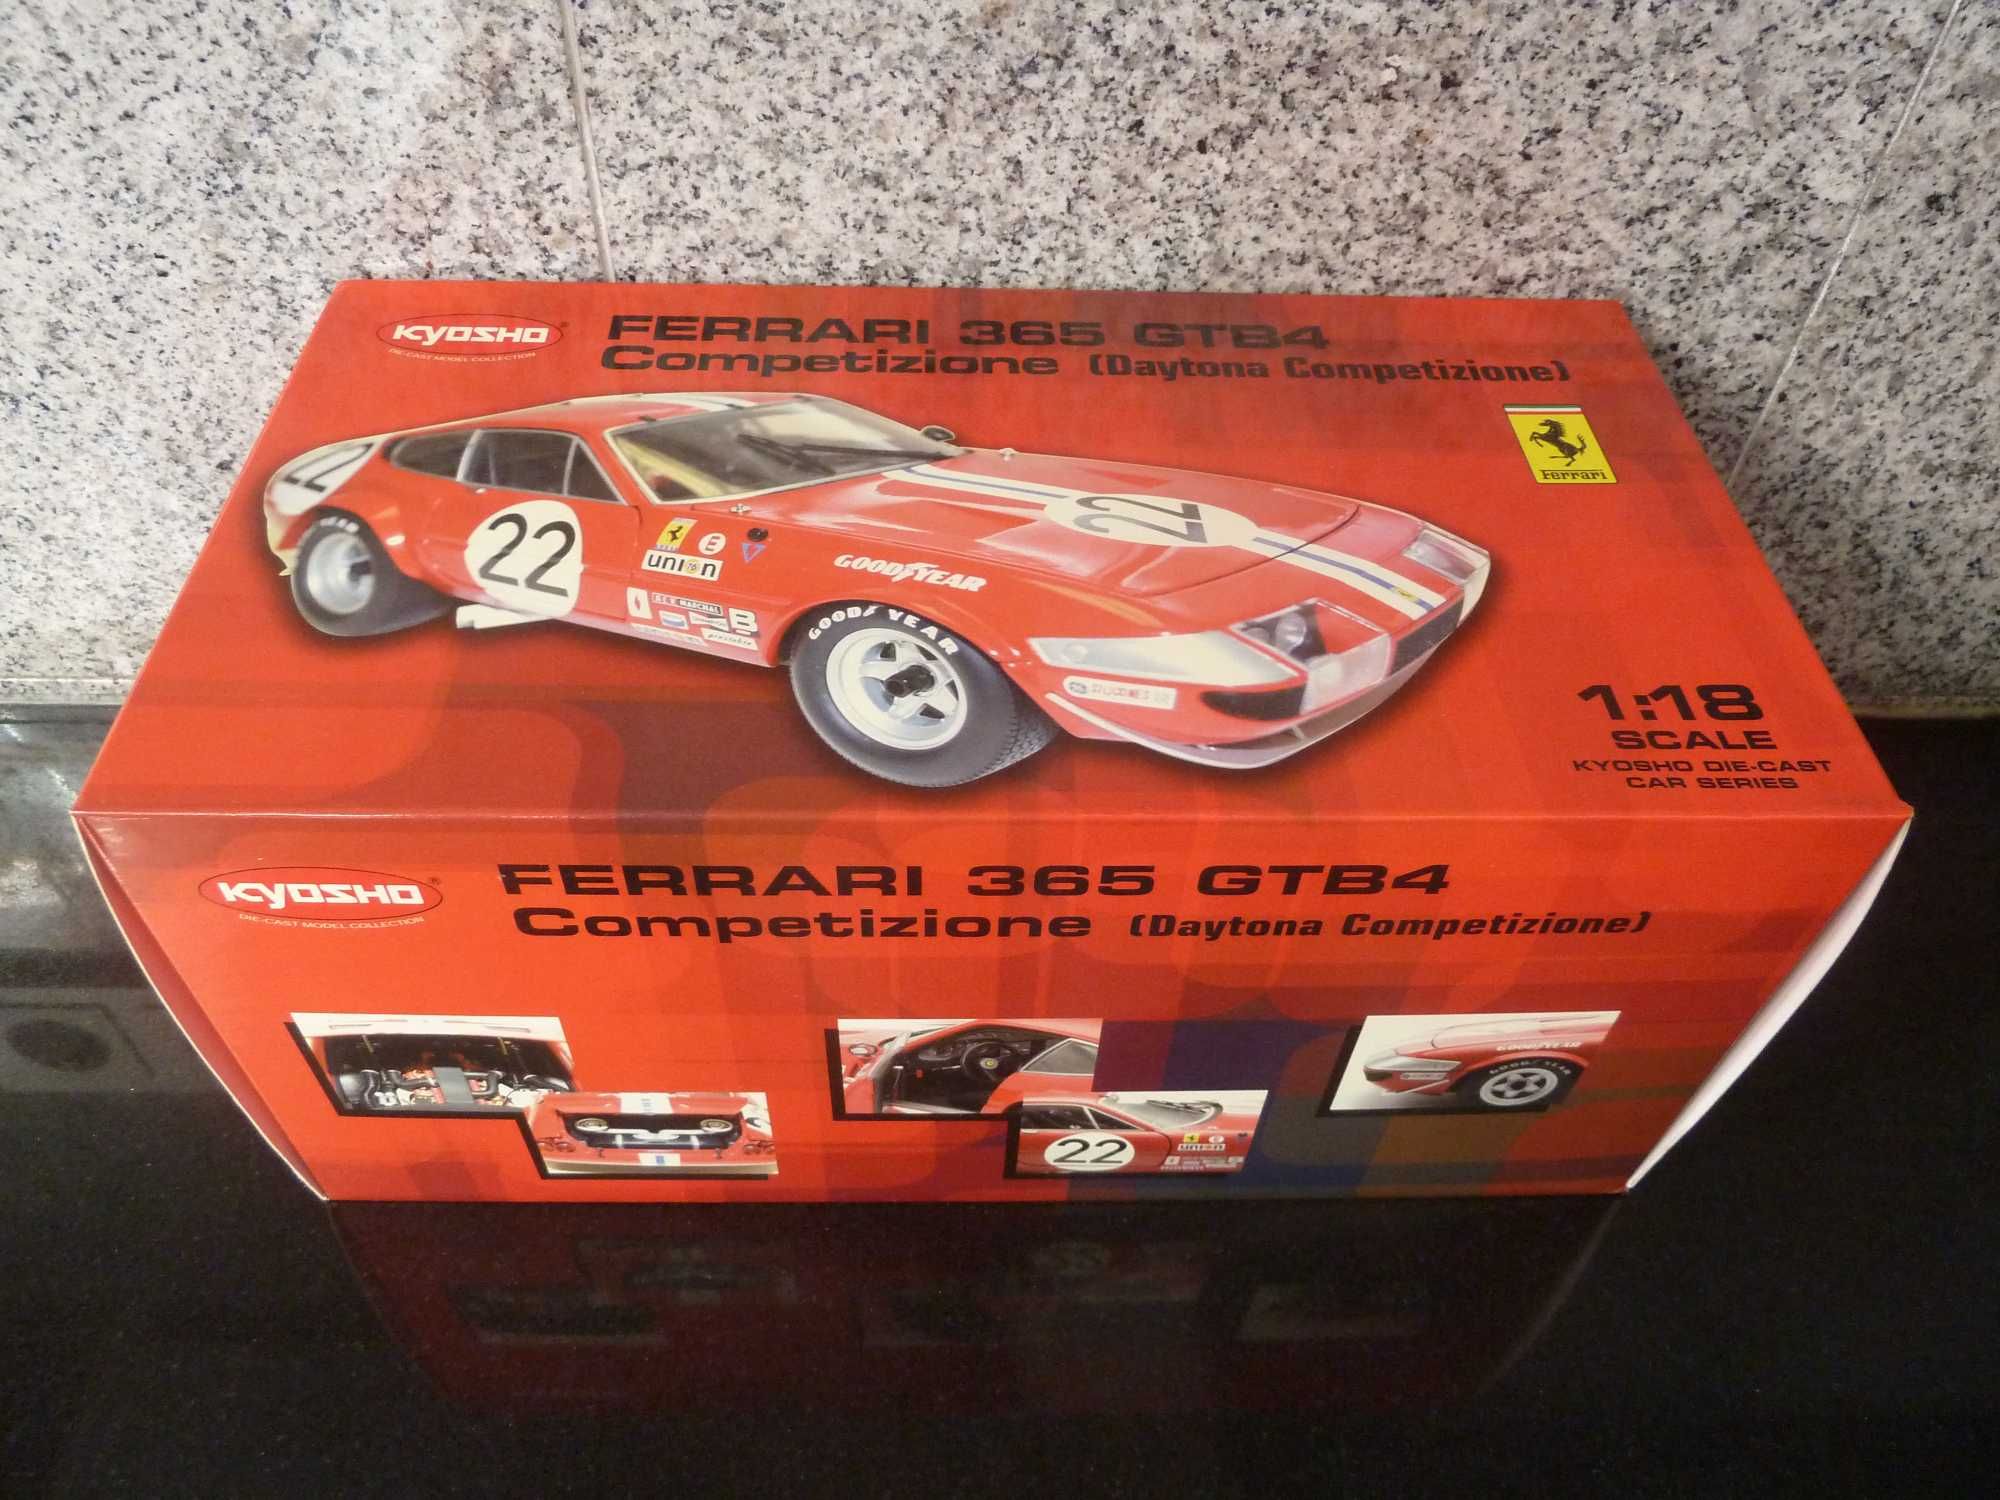 1:18 Kyosho, Ferrari 365 GTB4 Competizione, AutoArt Minichamps